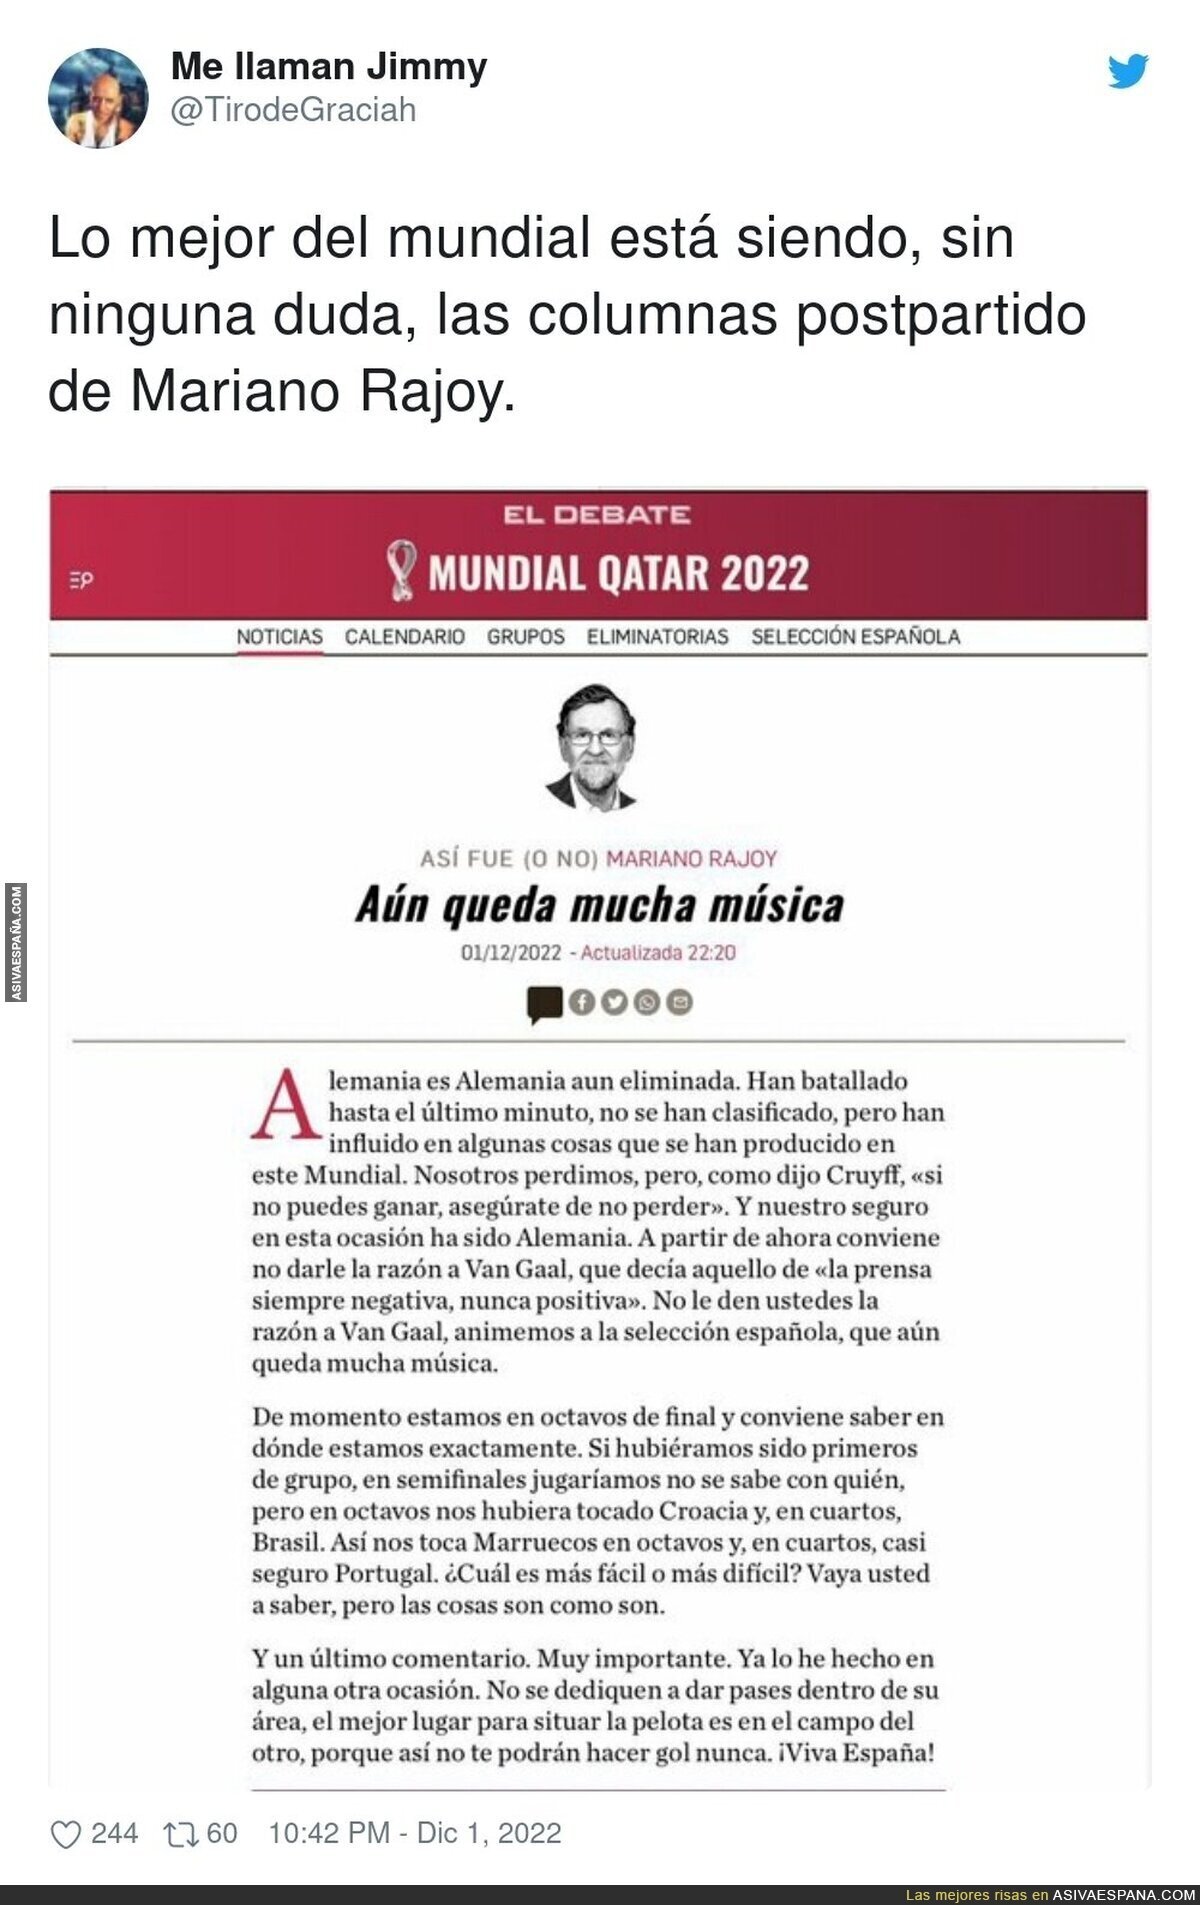 El surrealismo en estado puro de las columnas de Rajoy durante el Mundial